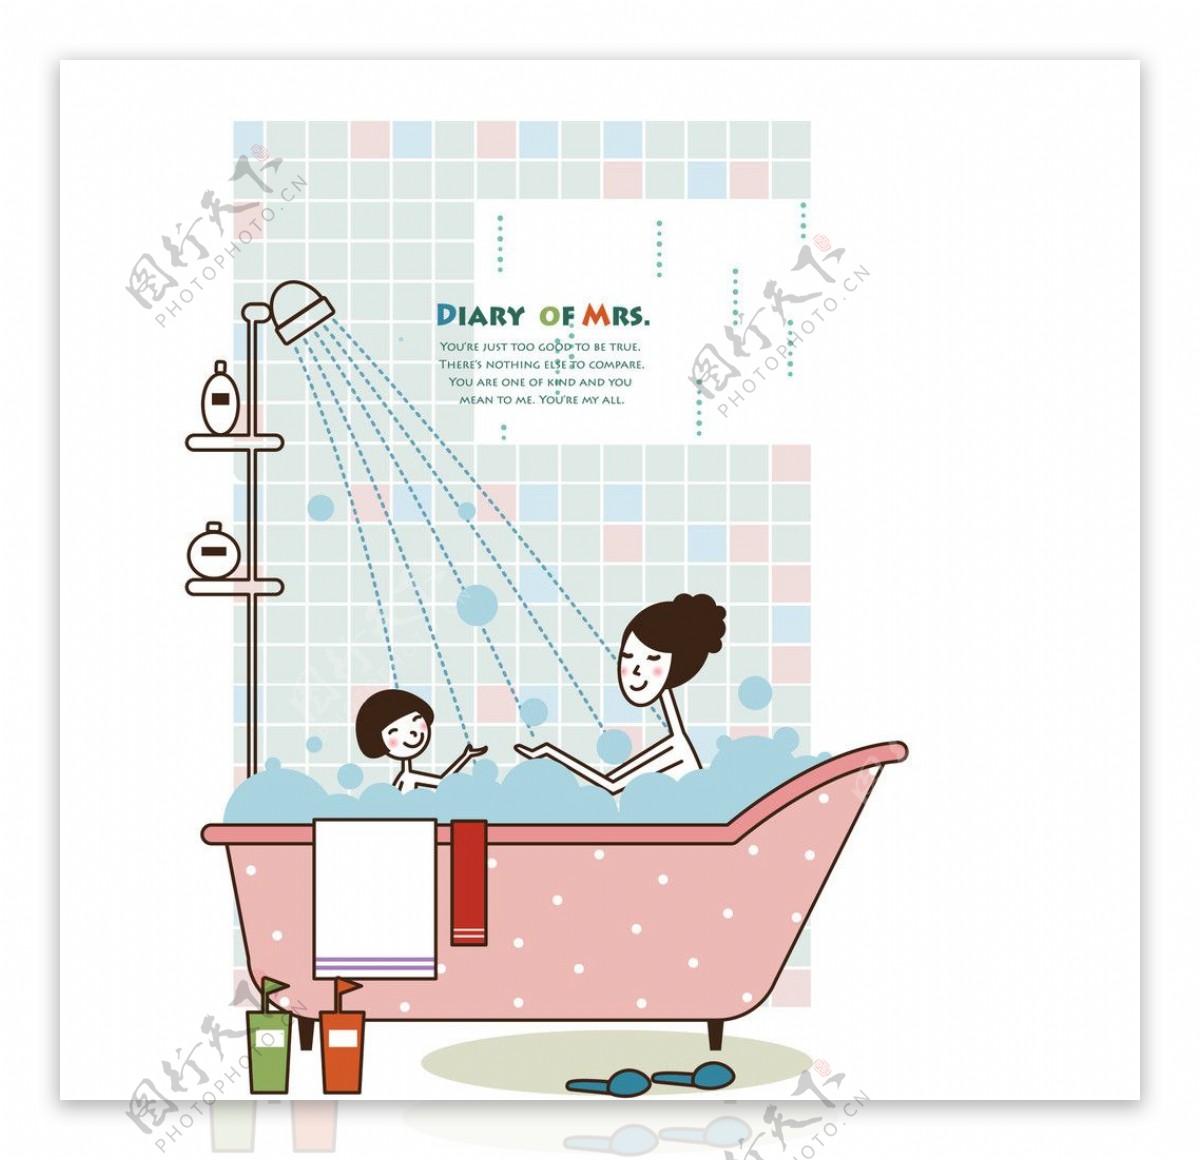 一起泡澡沐浴的母女图片